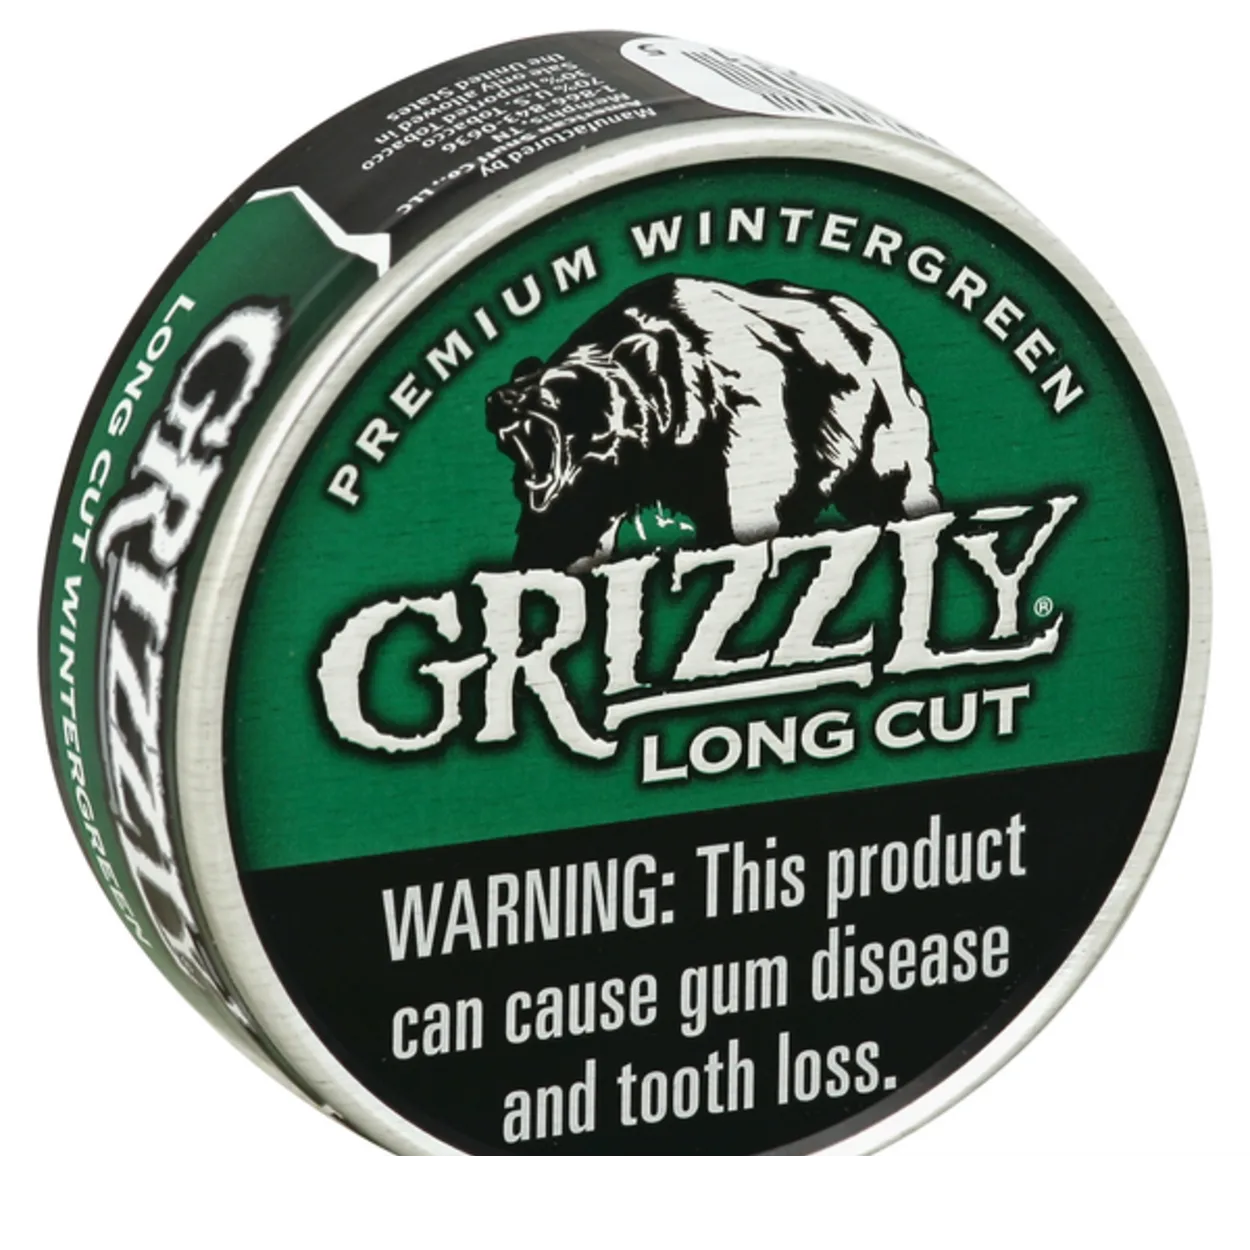  Որո՞նք են նմանություններն ու տարբերությունները Grizzly-ի և Copenhagen Chewing ծխախոտի միջև: (Բացահայտեք) - Բոլոր տարբերությունները